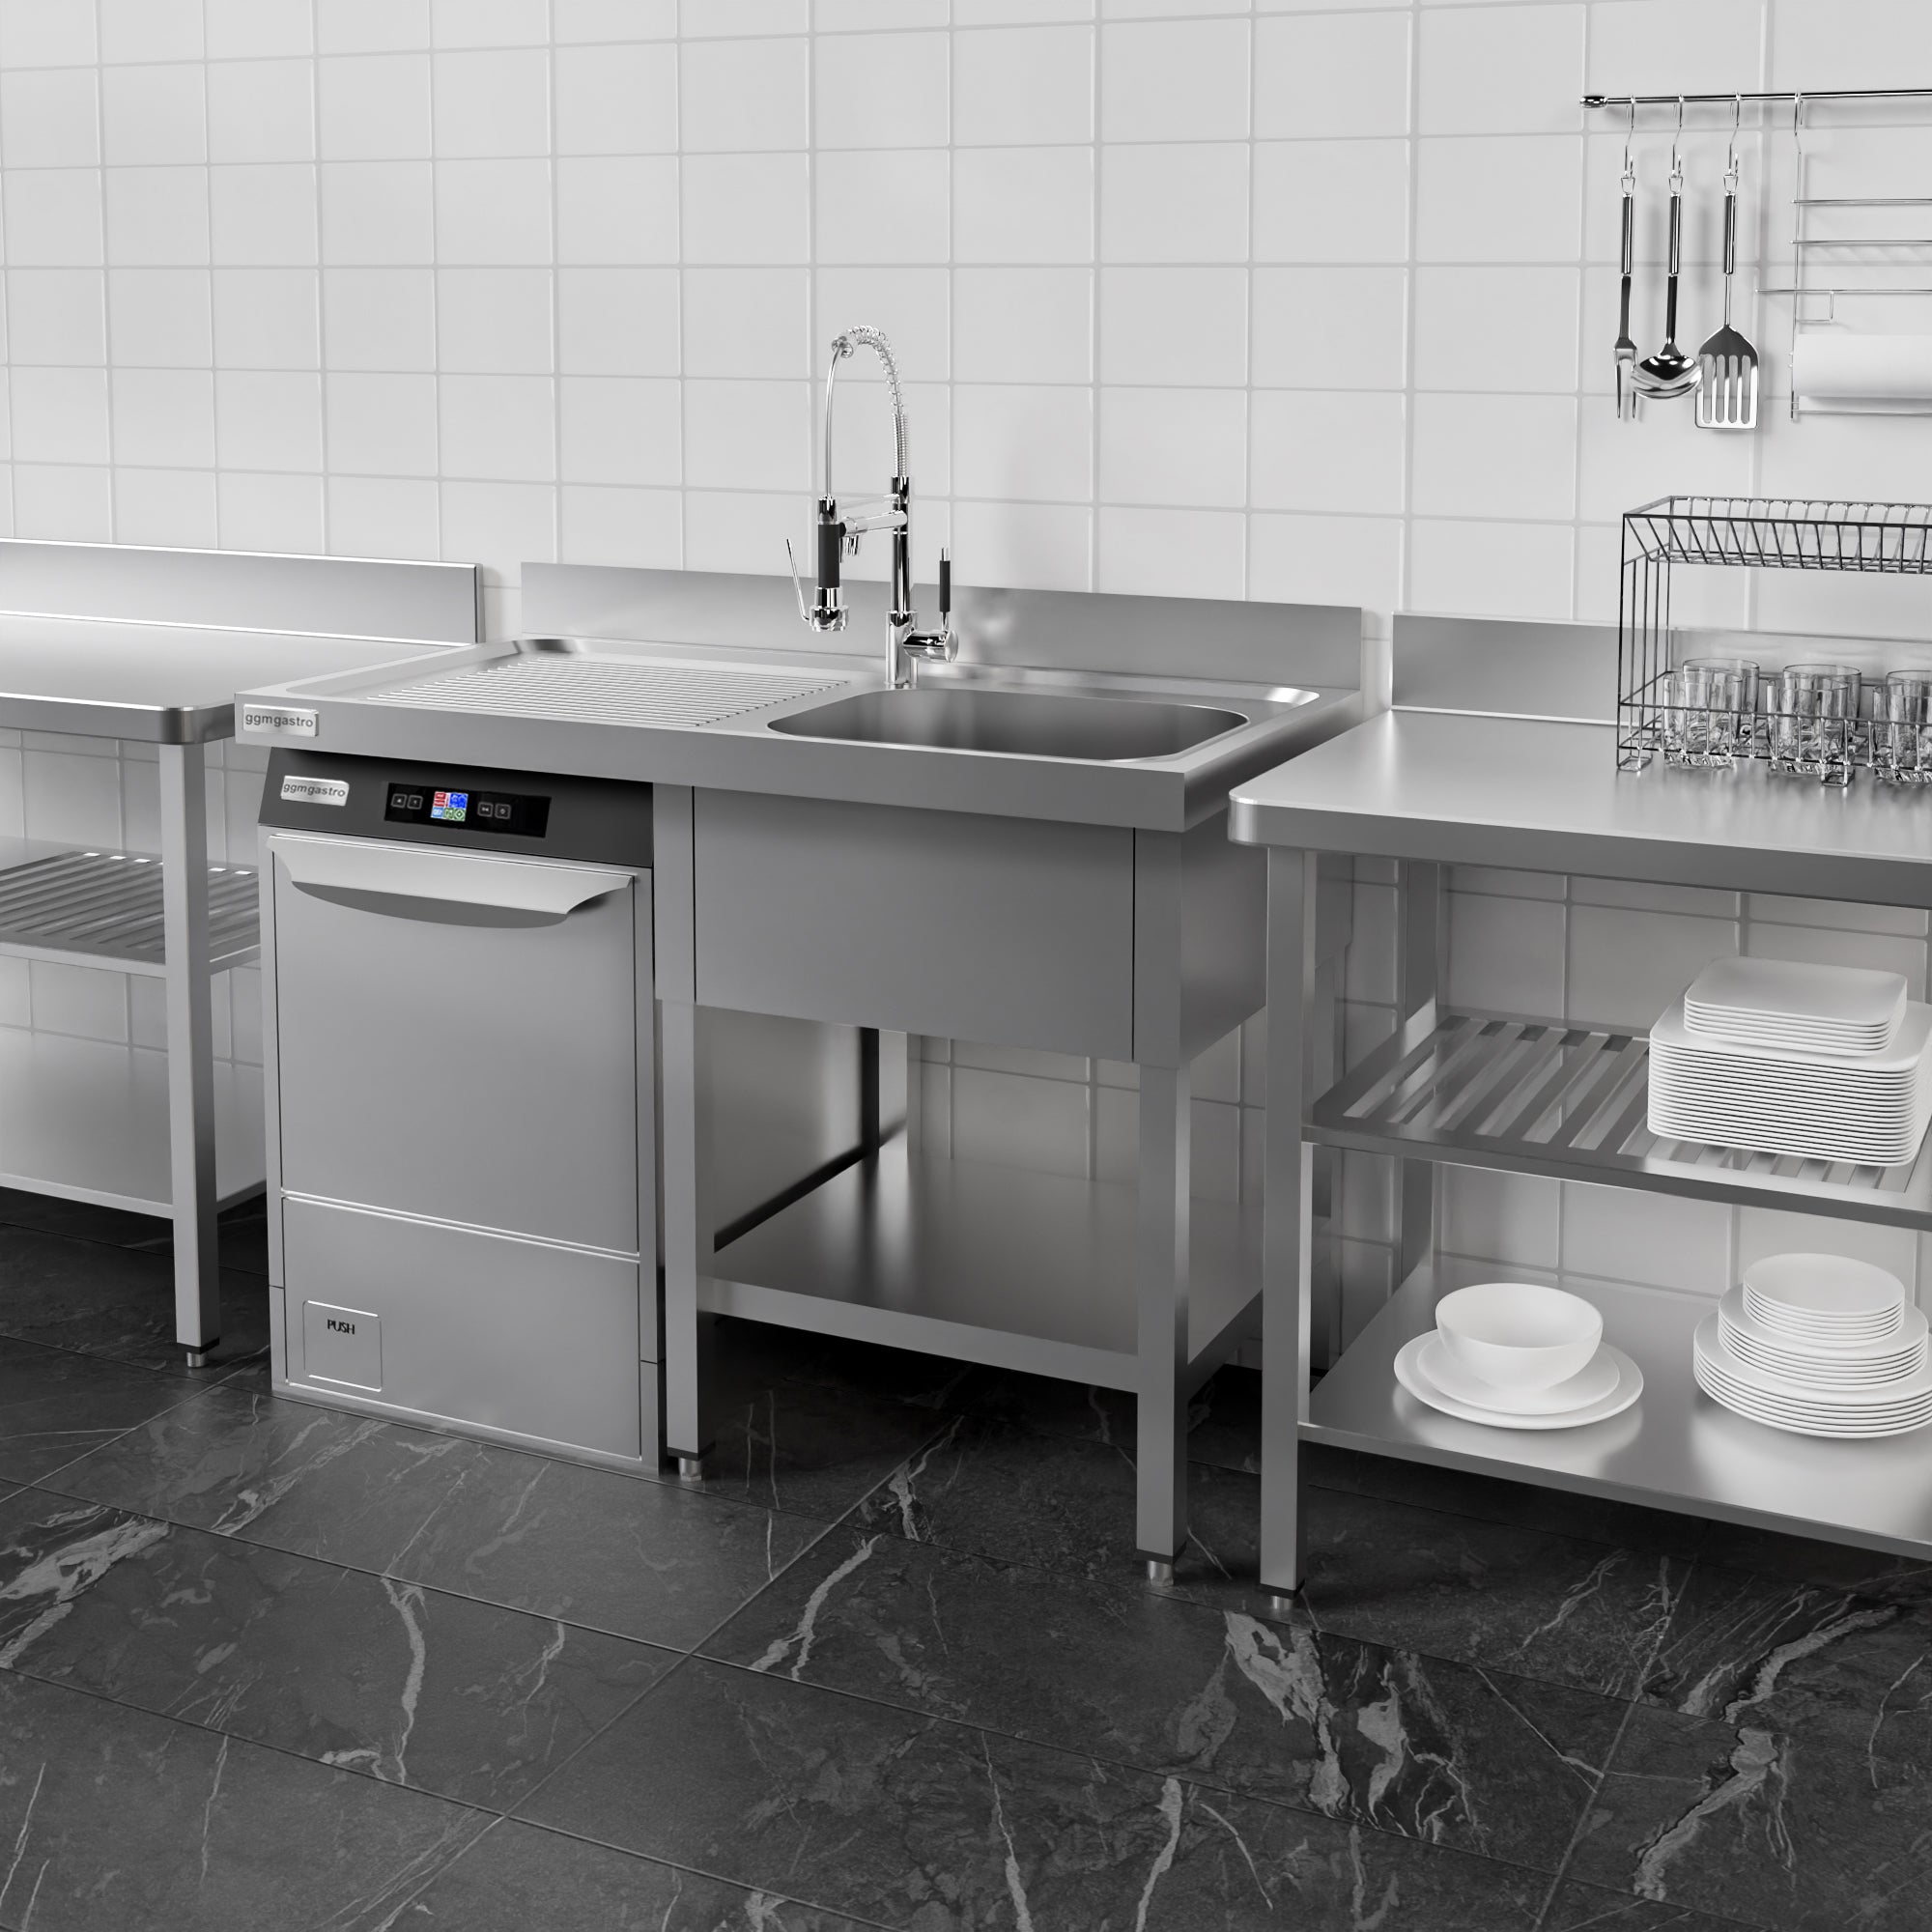 Vaskeborde med plads til opvaskemaskine 1,4m - 1 Vask til Højre L 60 x B 50 x D 30 cm